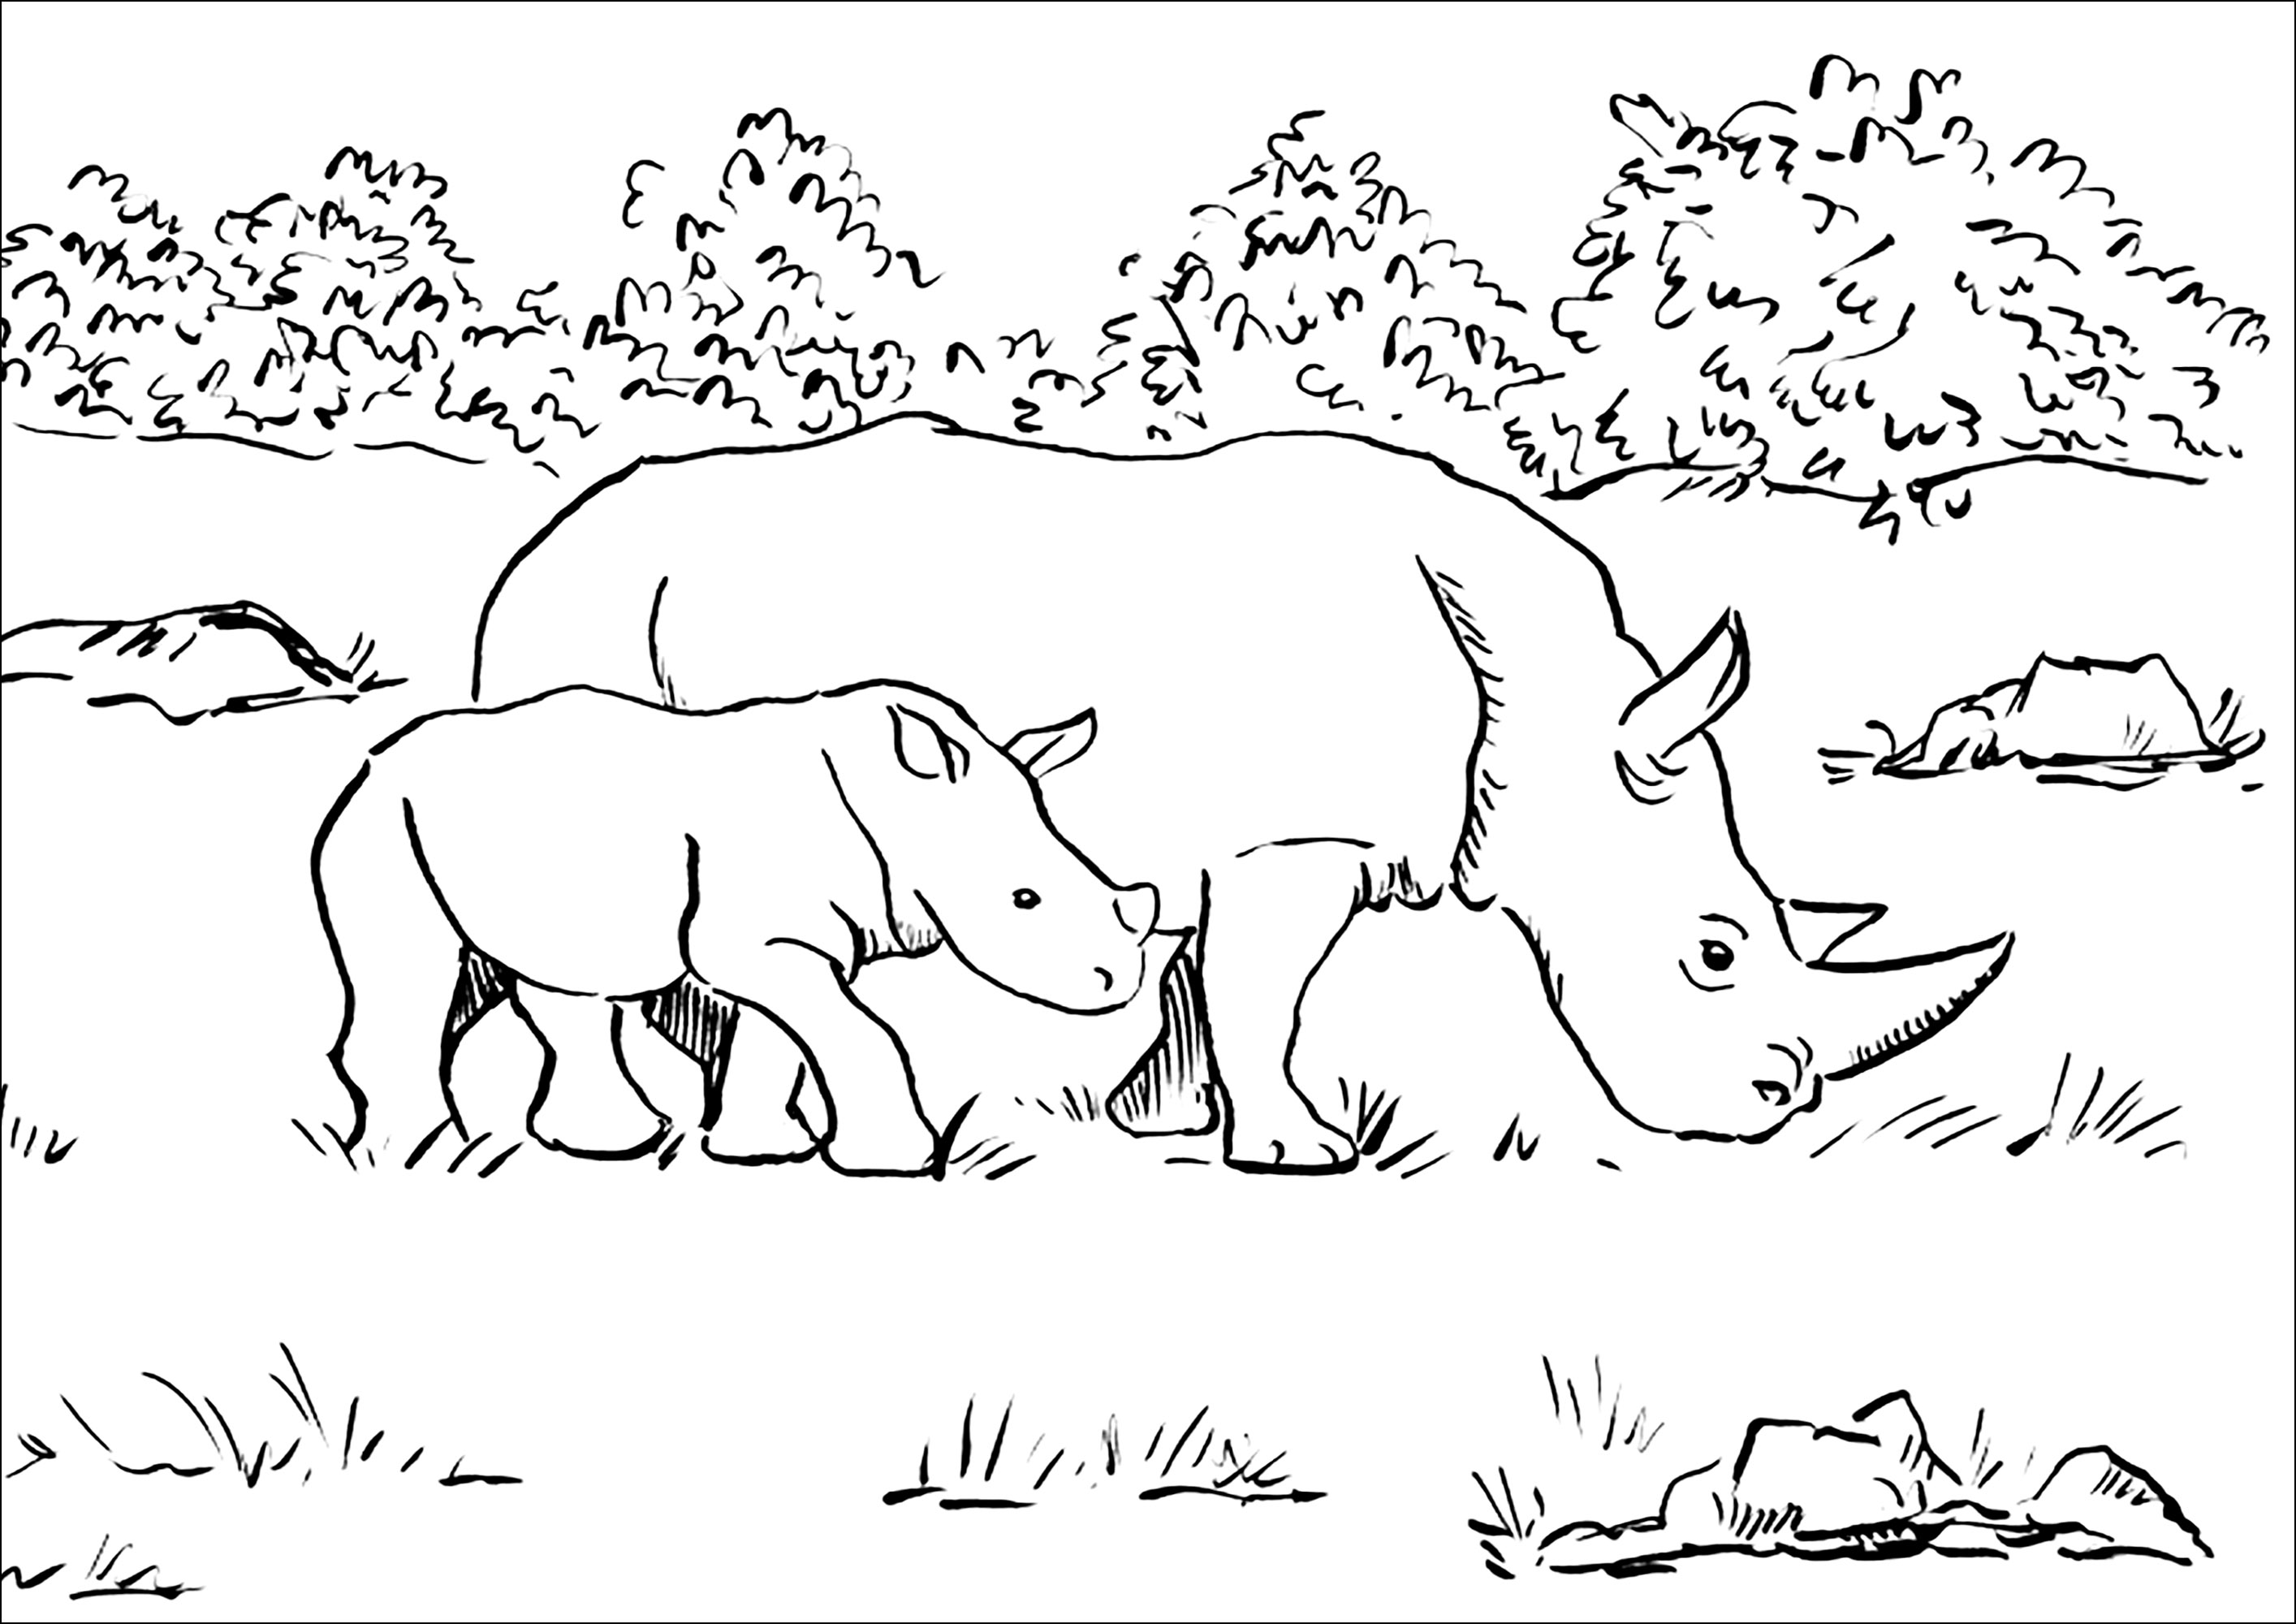 Rinoceronte madre y su cría